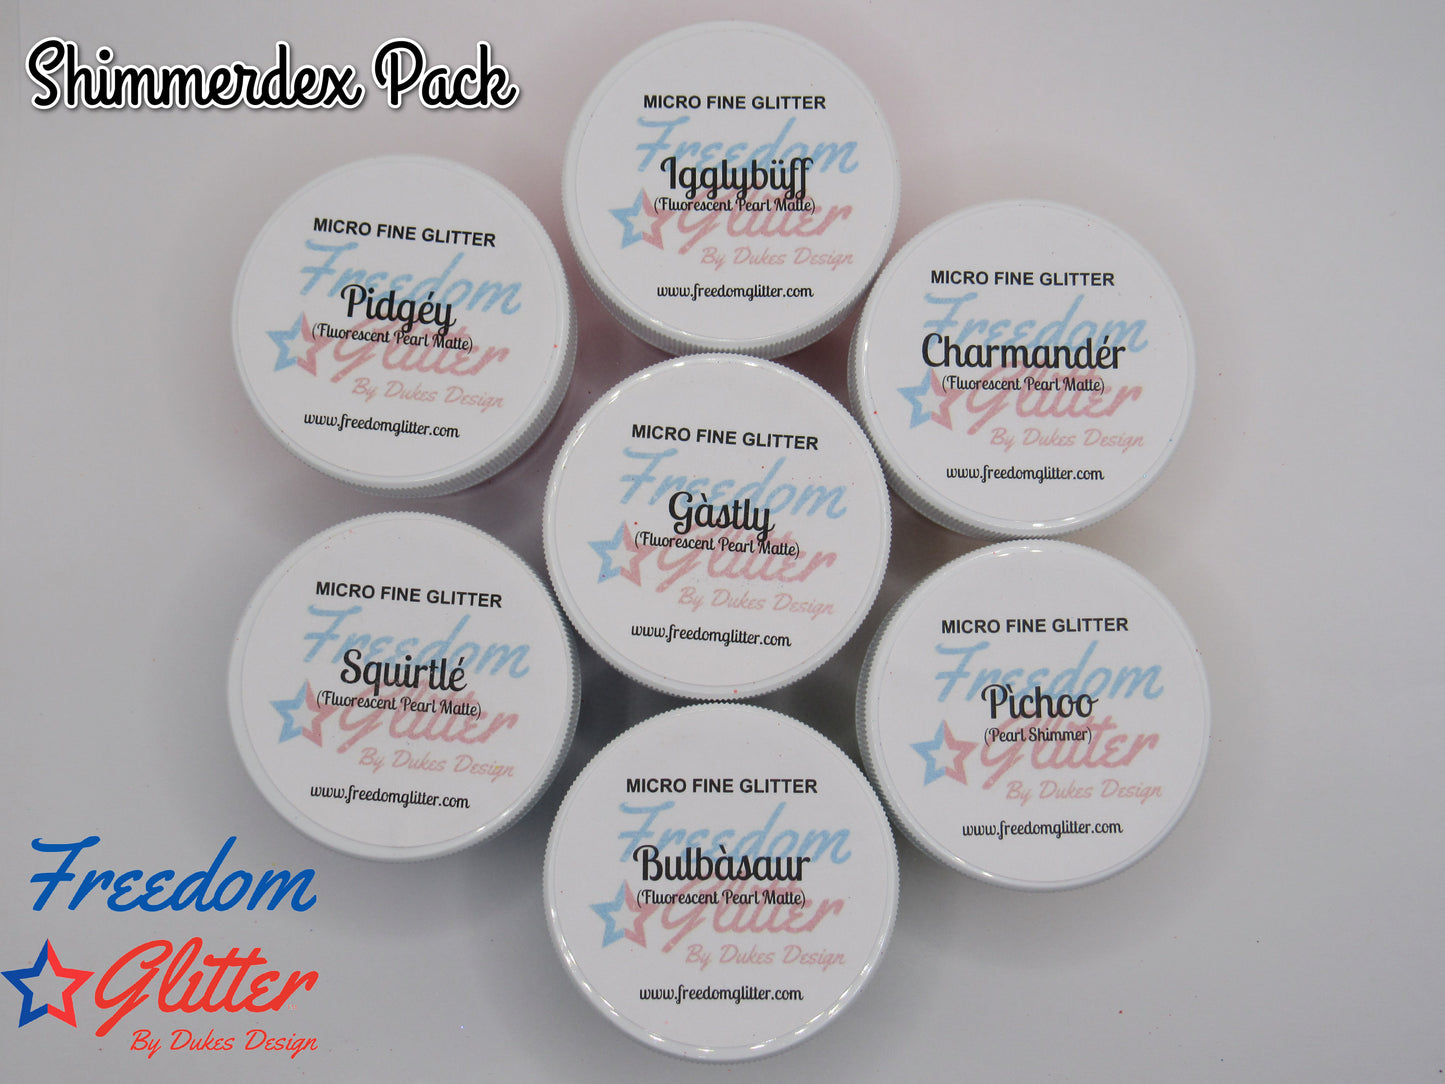 Shimmerdex Pack (Micro Fine Glitter)